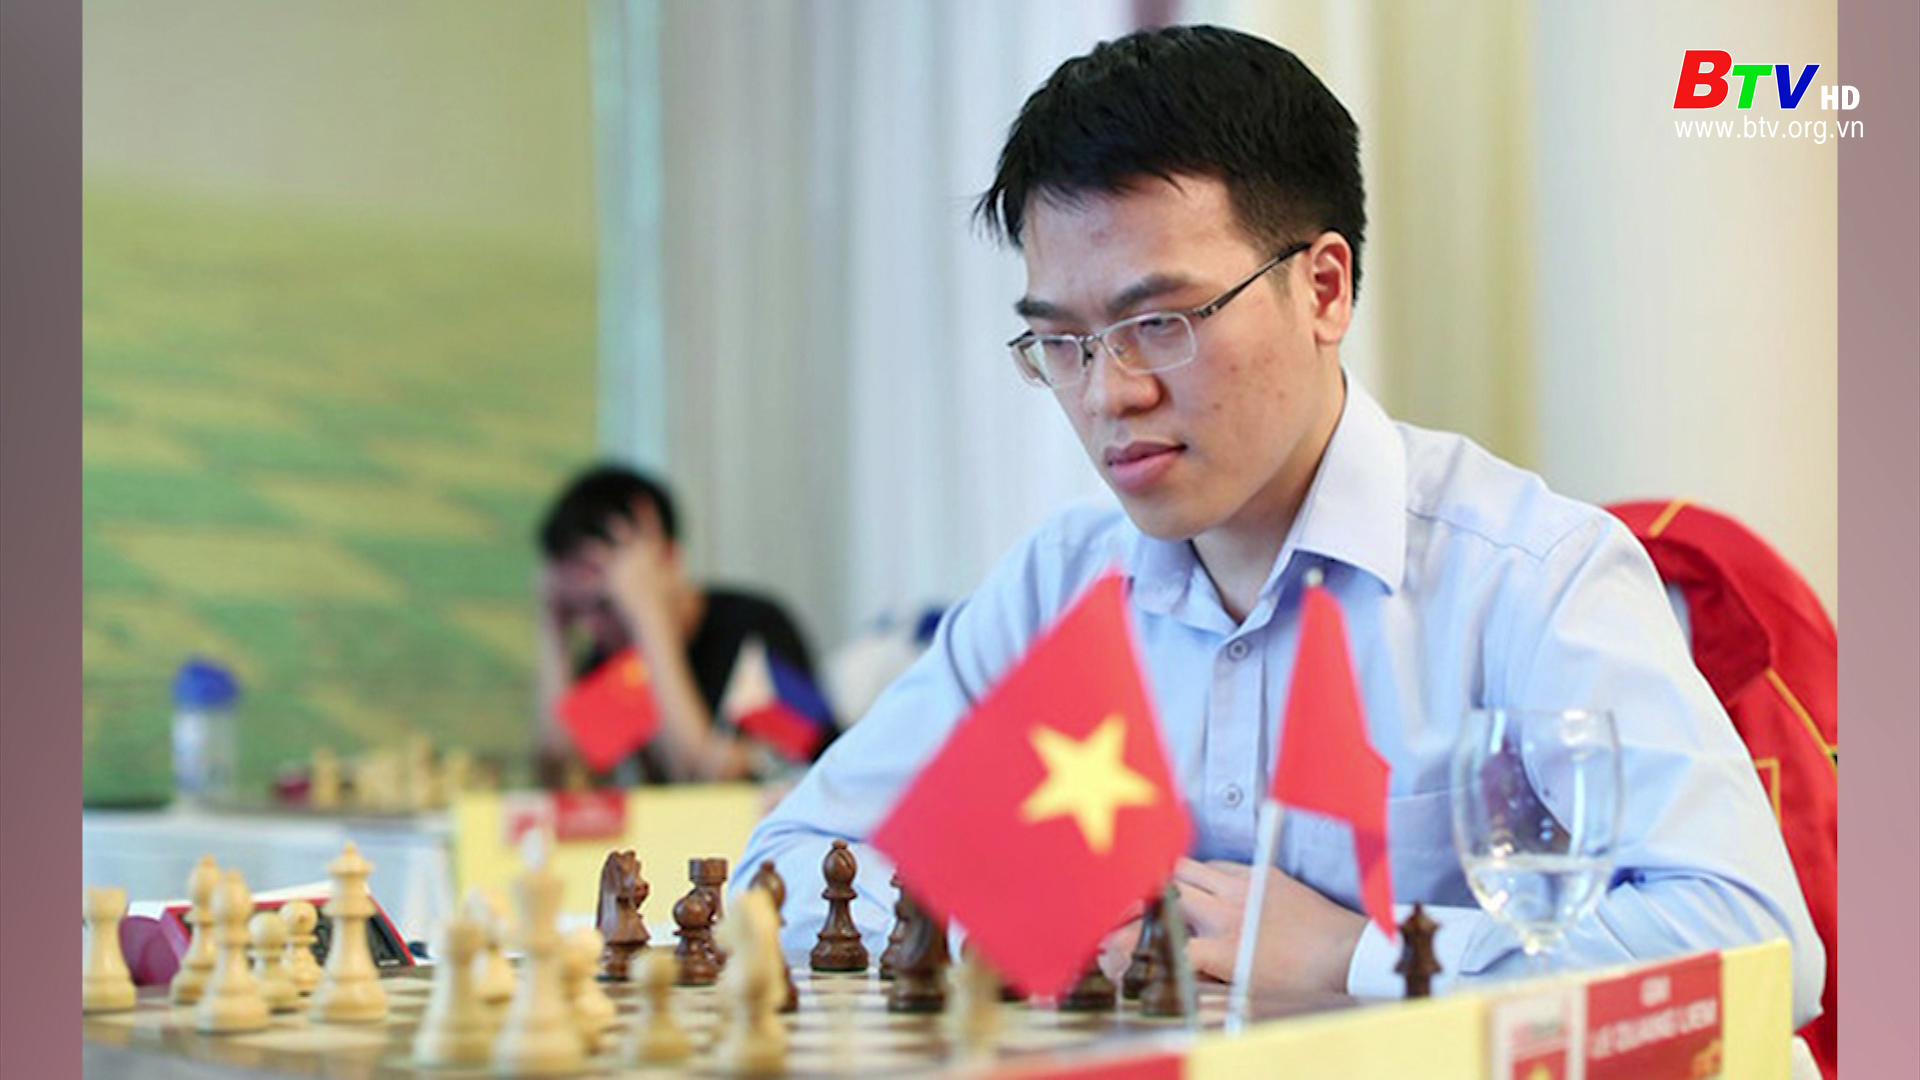 Kỳ thủ Lê Quang Liêm xếp vị trí 18 thế giới của FIDE